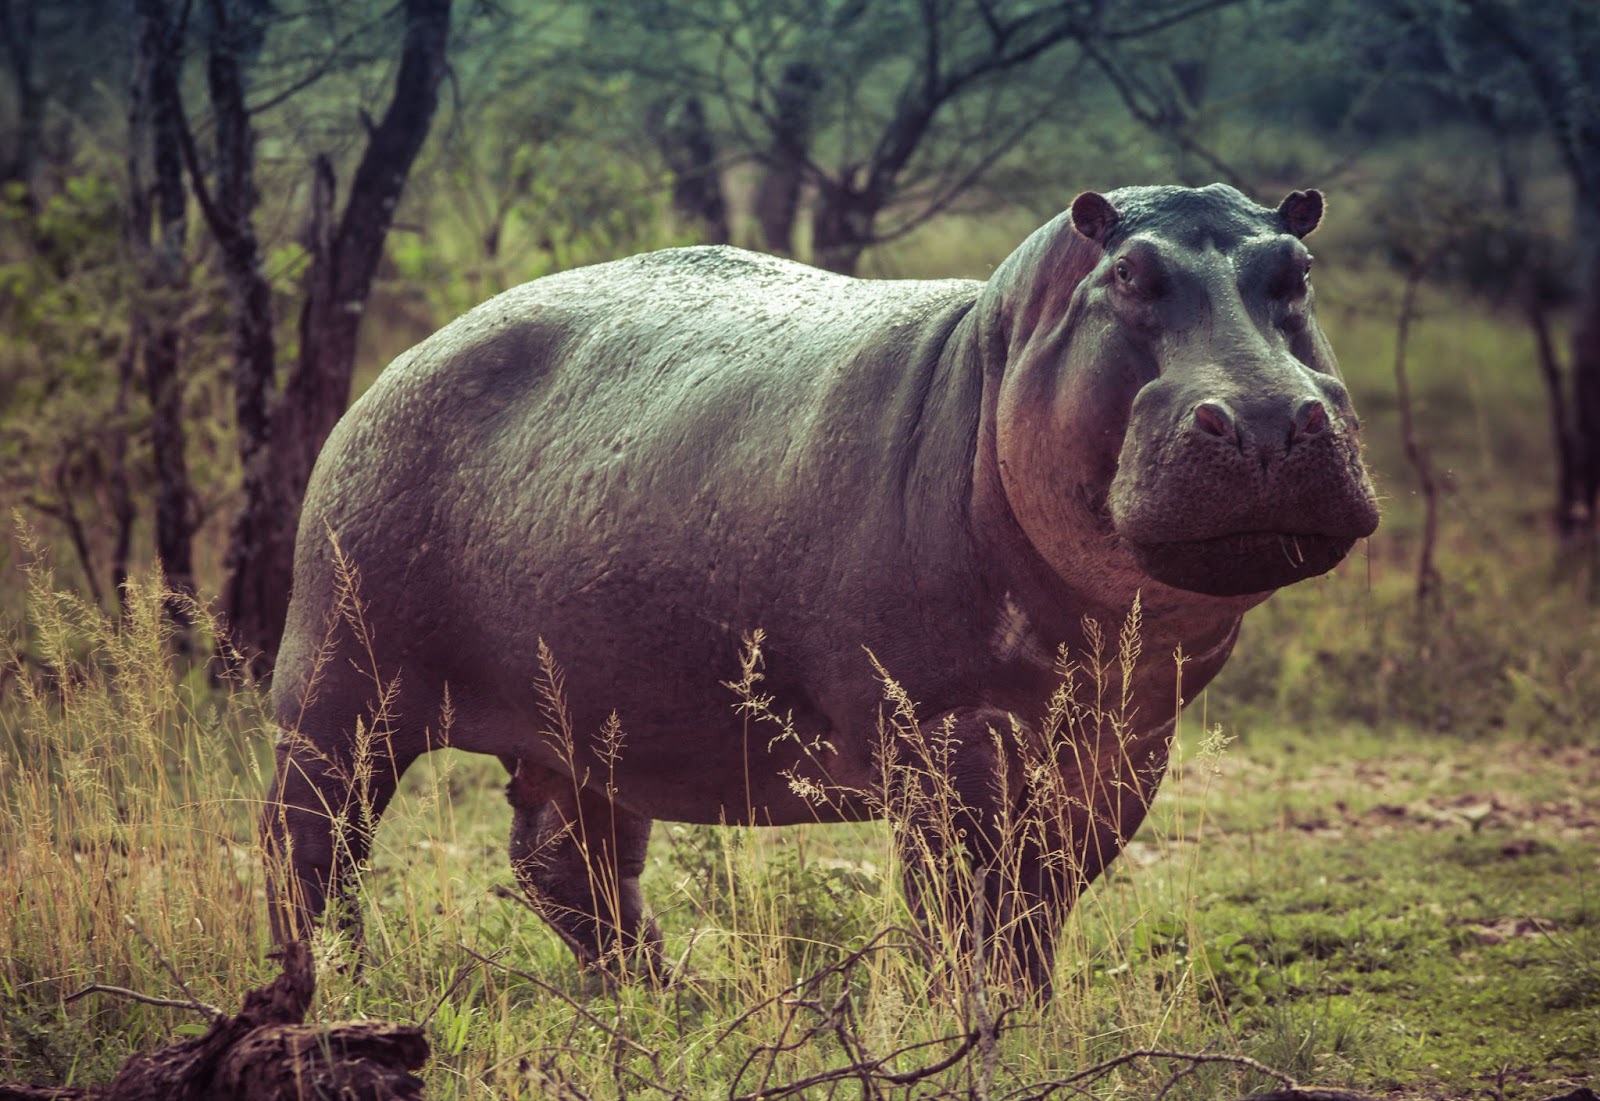 The Majestic Hippopotamus: Gentle Giants of the Waterways